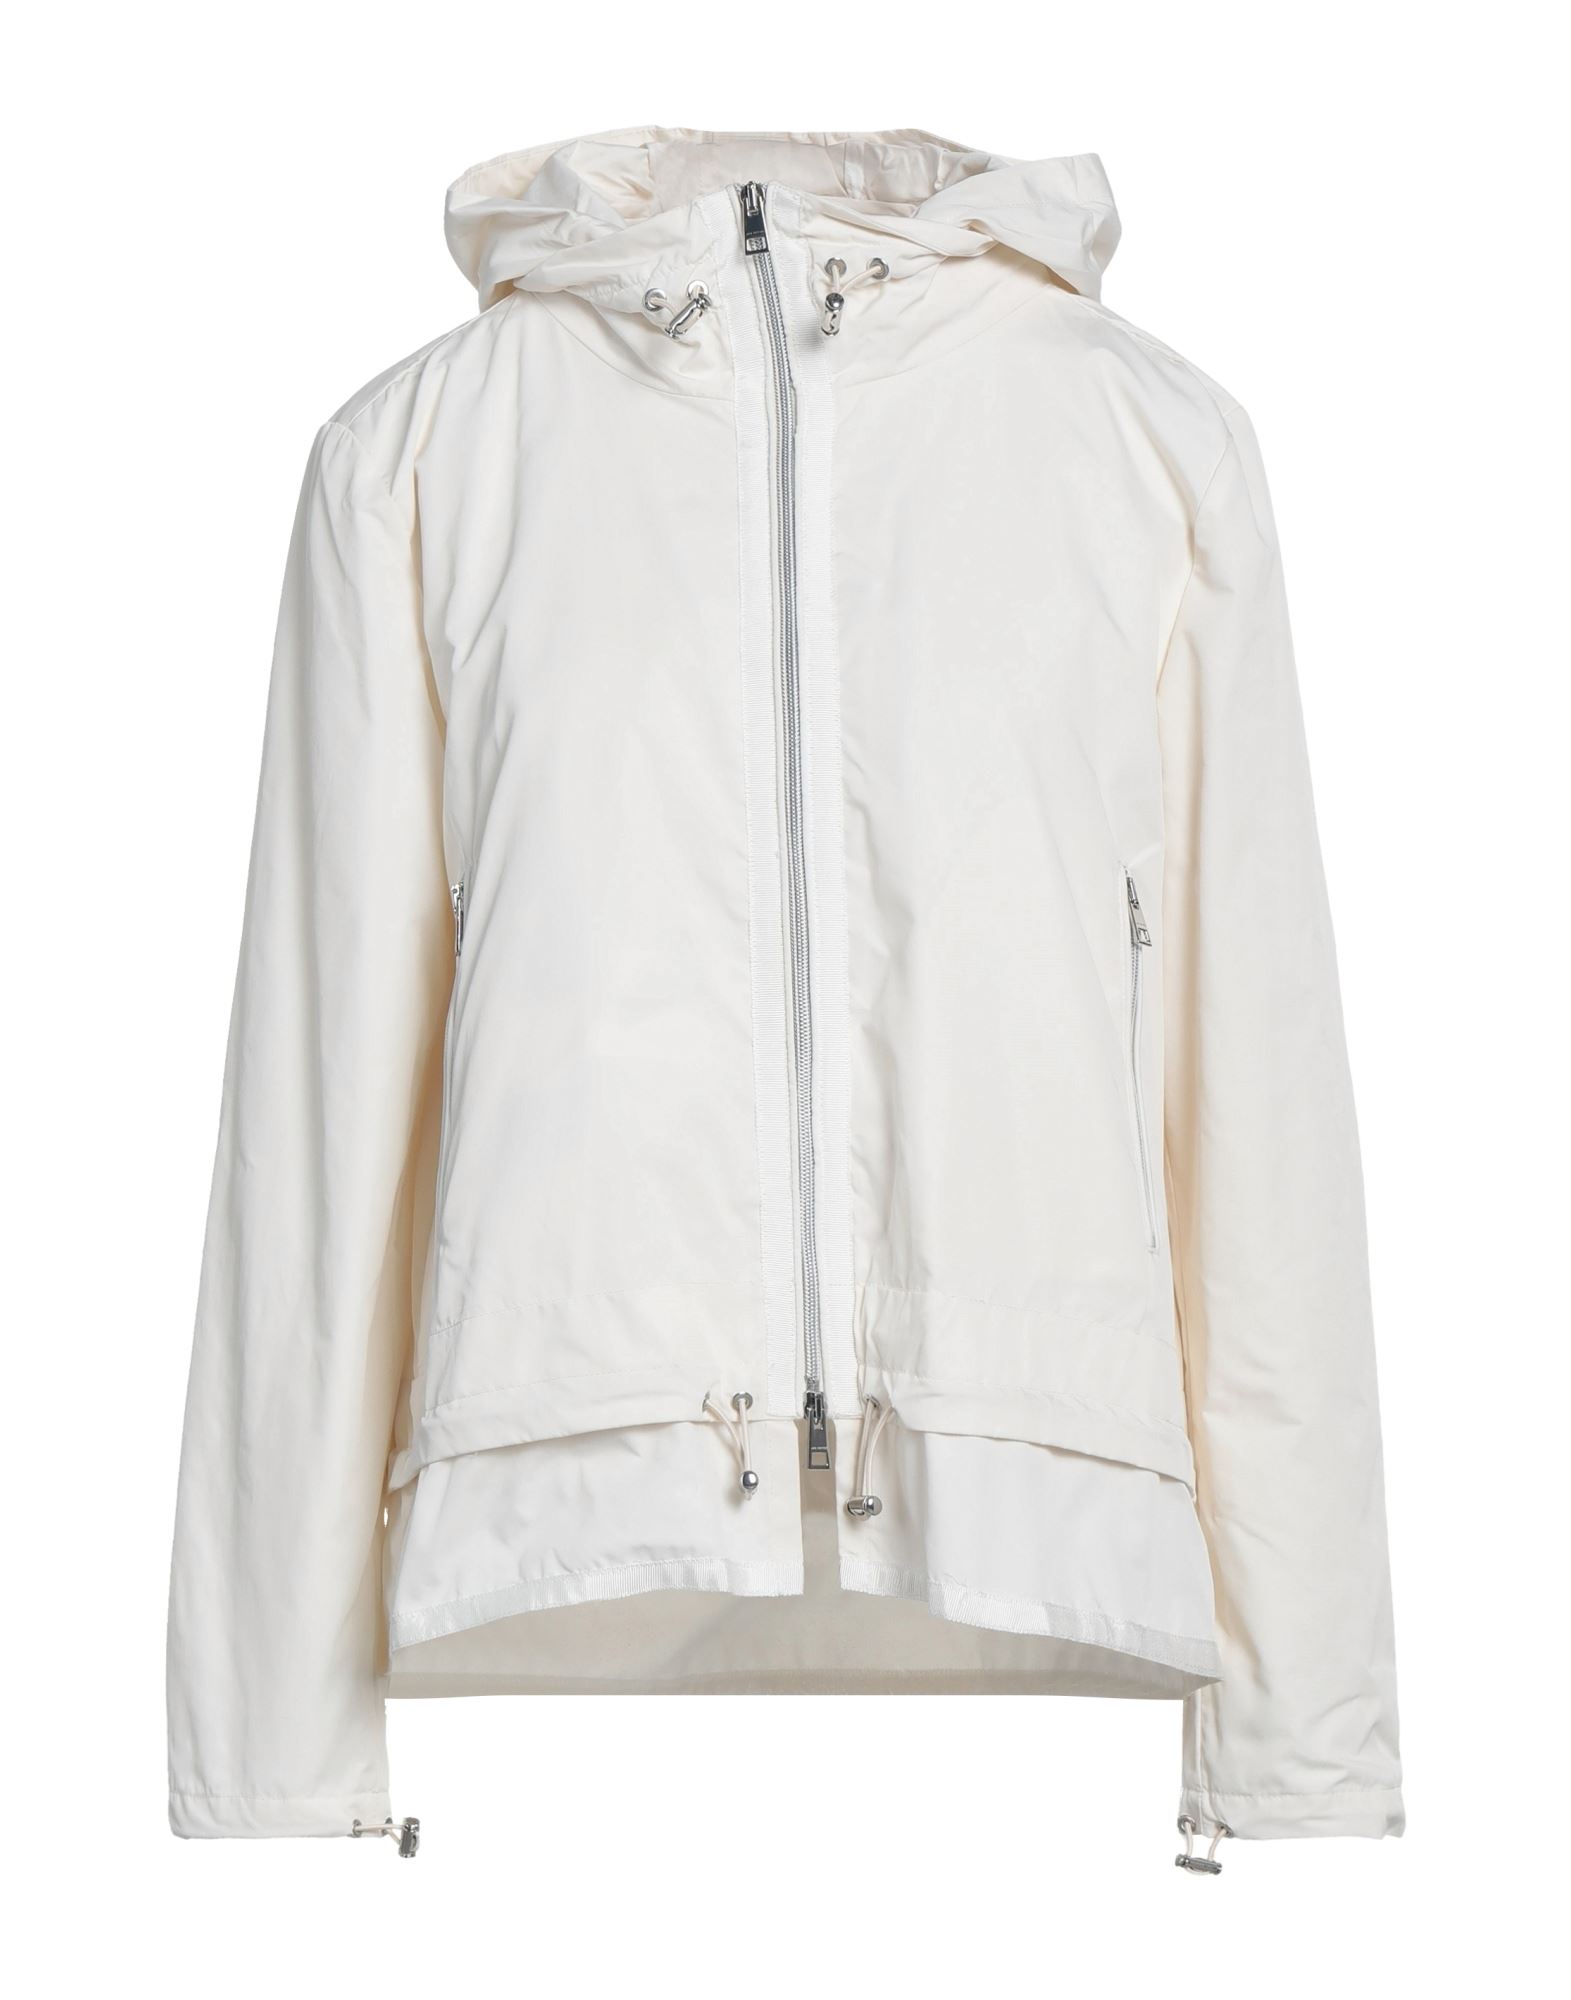 Jan Mayen Jackets In White